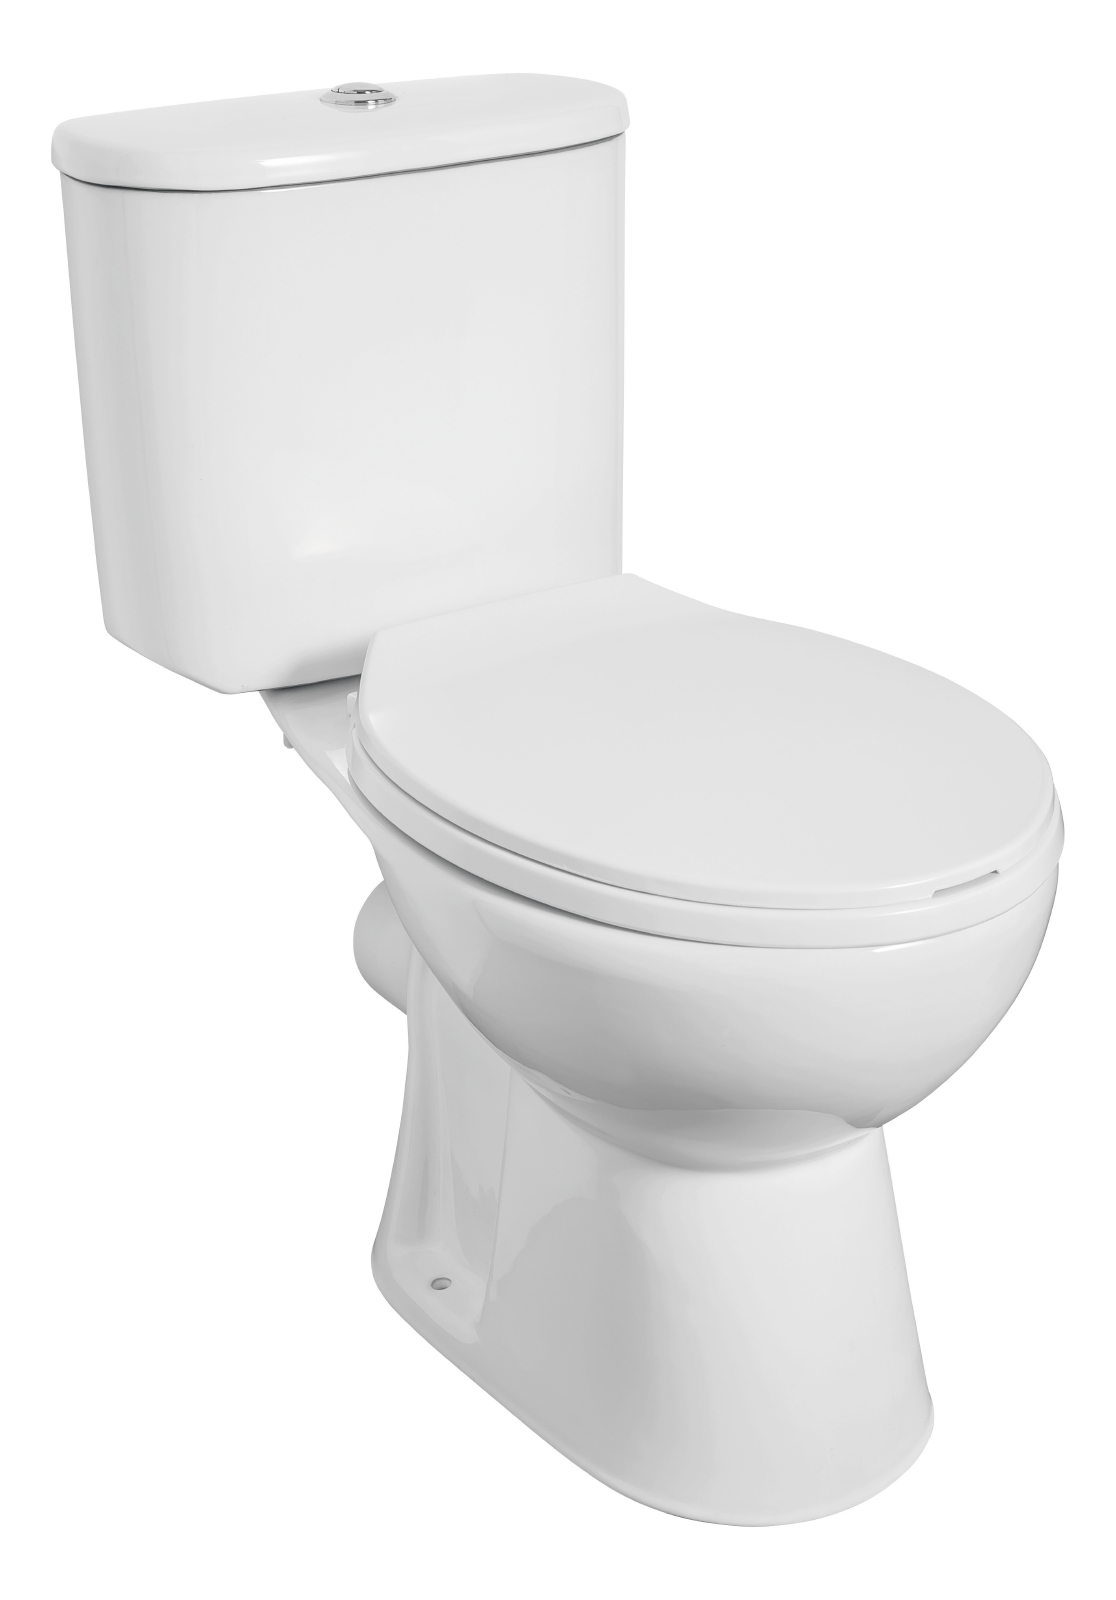 'aquaSu® Basic WC-Kombination 374, spülrandloses Stand-WC mit WC-Sitz und Spülkasten in Weiß